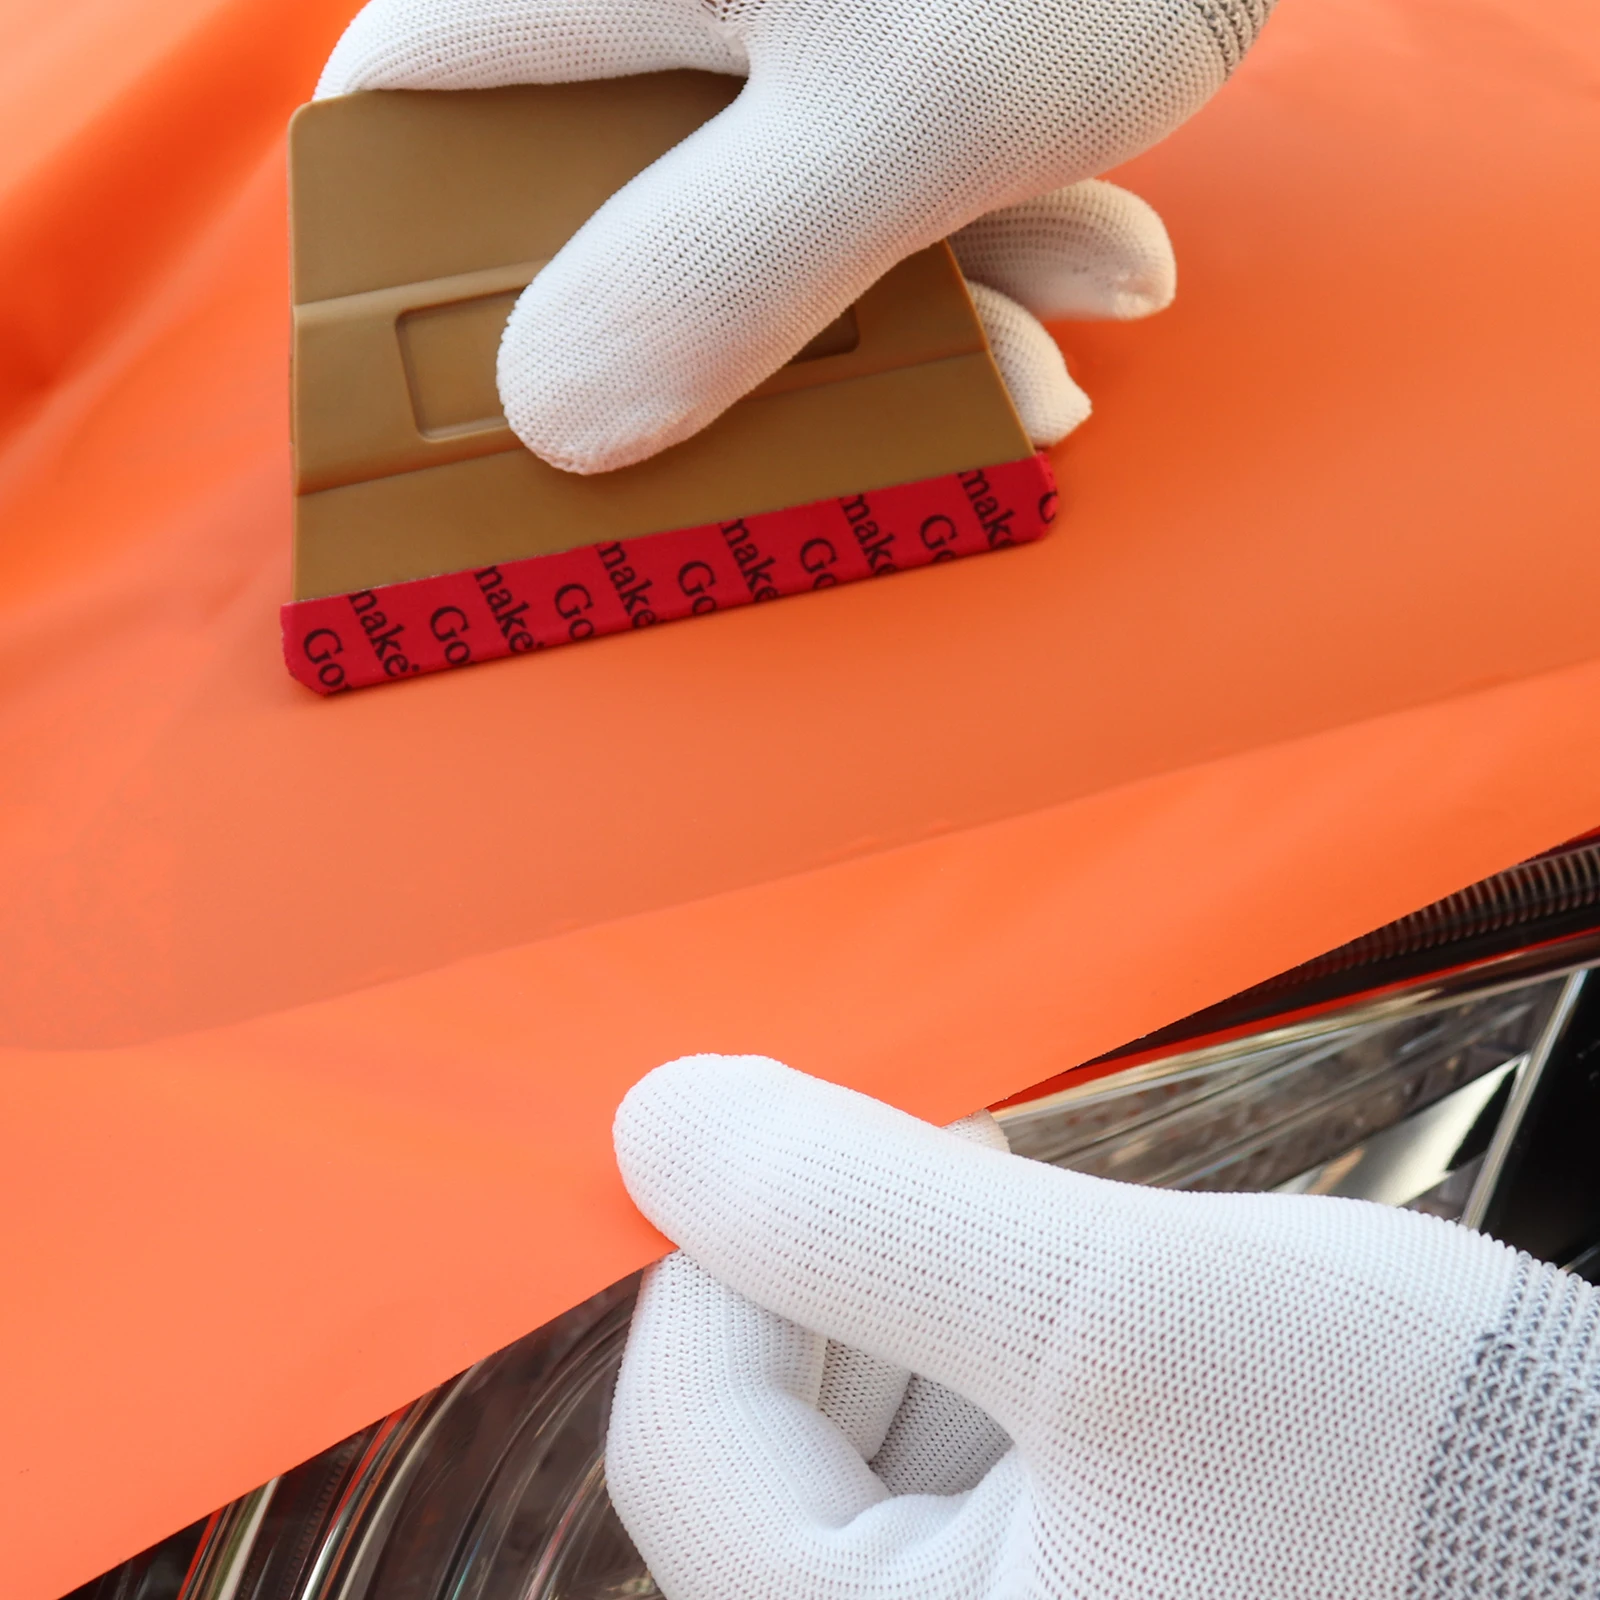 FOSHIO автомобильное ОКНО ТИНТ установка набор инструментов виниловая обертка из углеродного волокна пленка из Фольги Магнит Ракель резак Тонировка автомобиля аксессуары